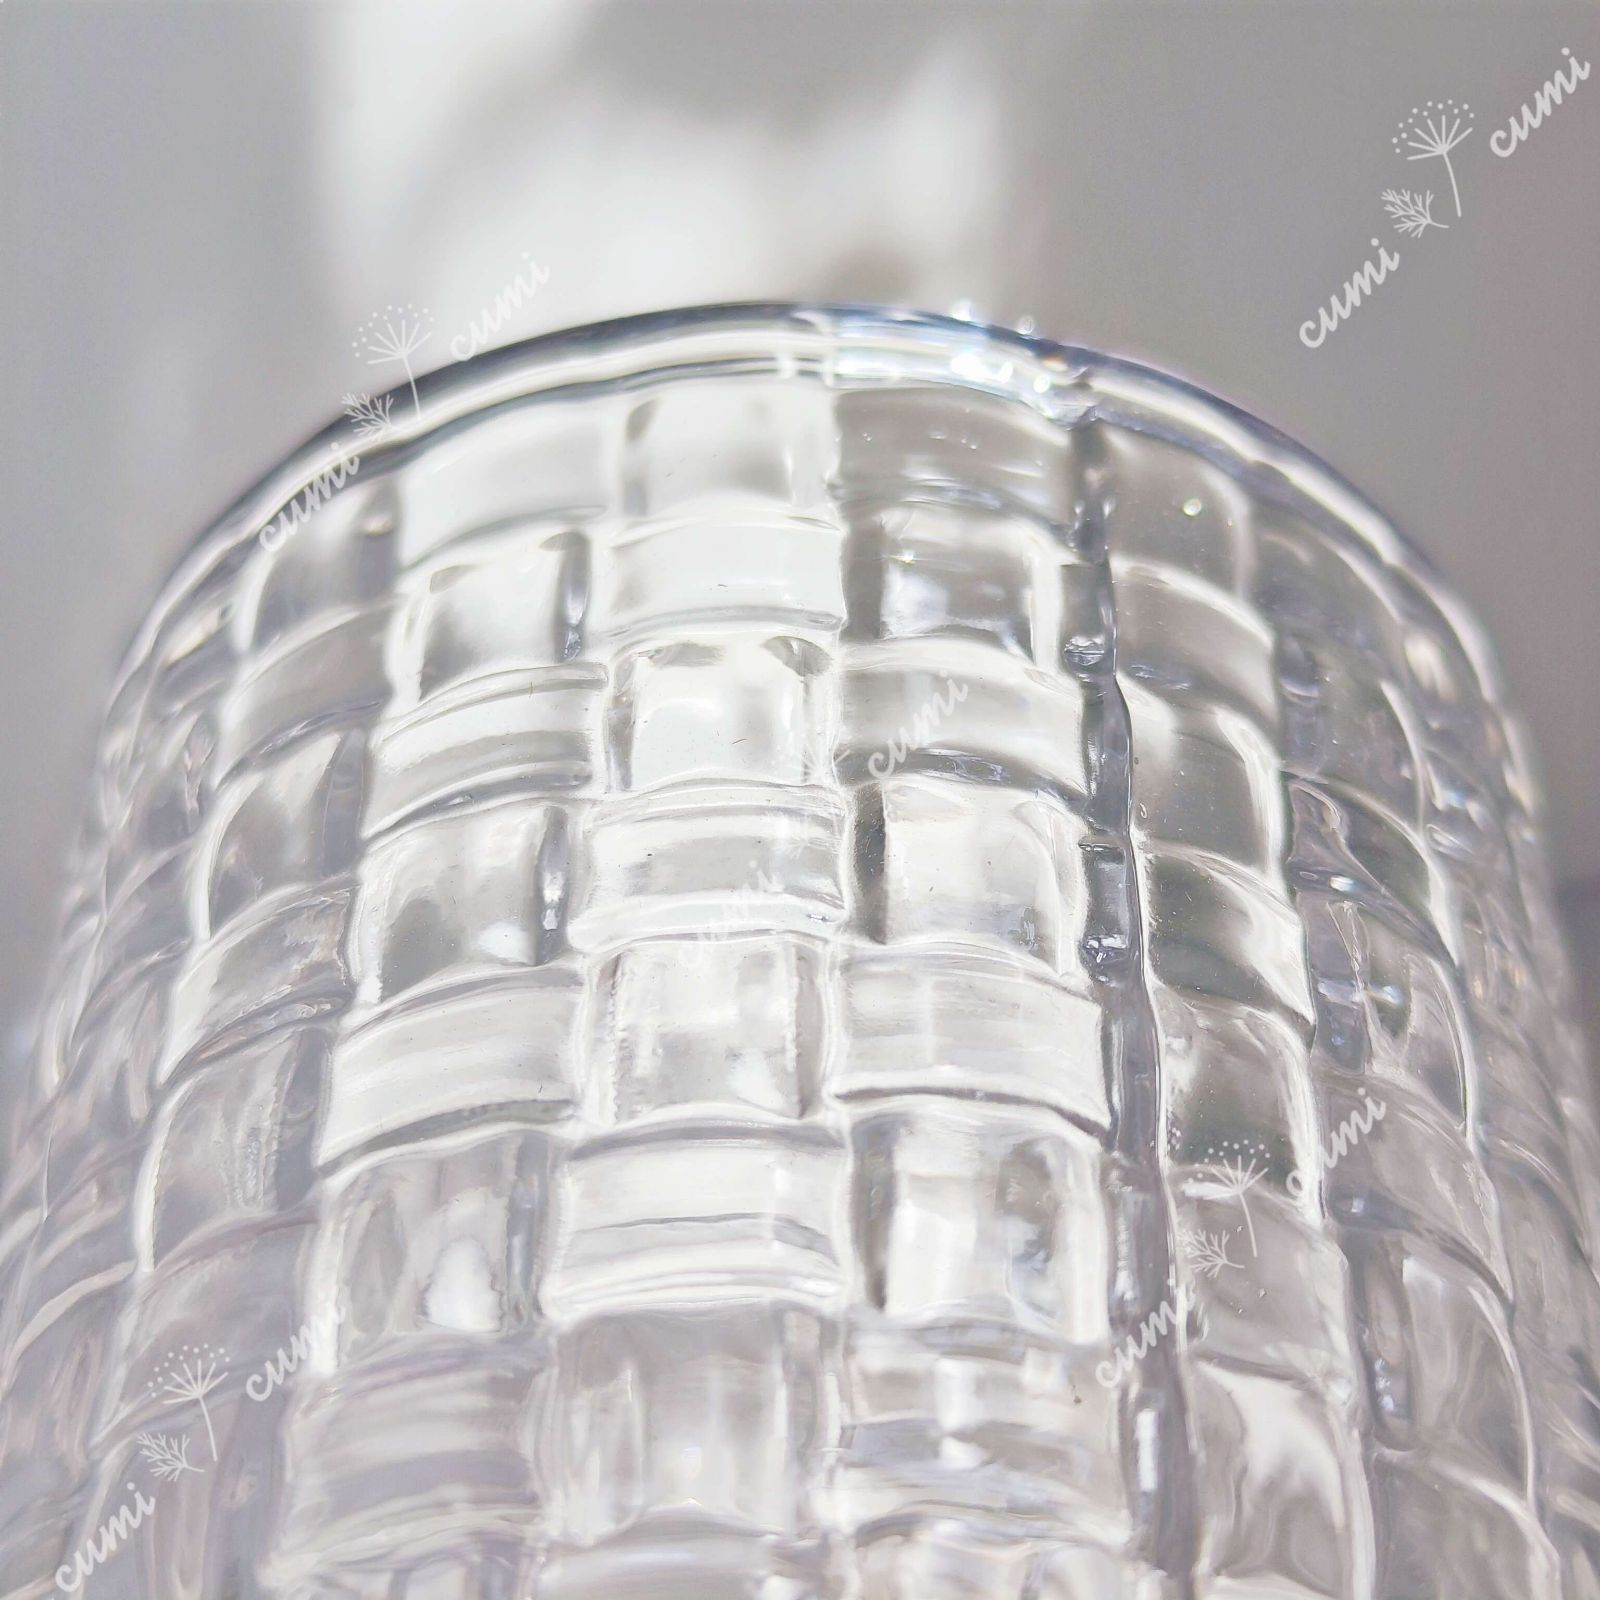 高品質 北欧 ガラス 花瓶 フラワーベース クリスタル インテリア おしゃれ 透明 クリア キラキラ 限定 一輪挿し 高級 おしゃれ 室内 激安 レア  プレゼント 海外 おすすめ 人気 デザイン 観葉植物